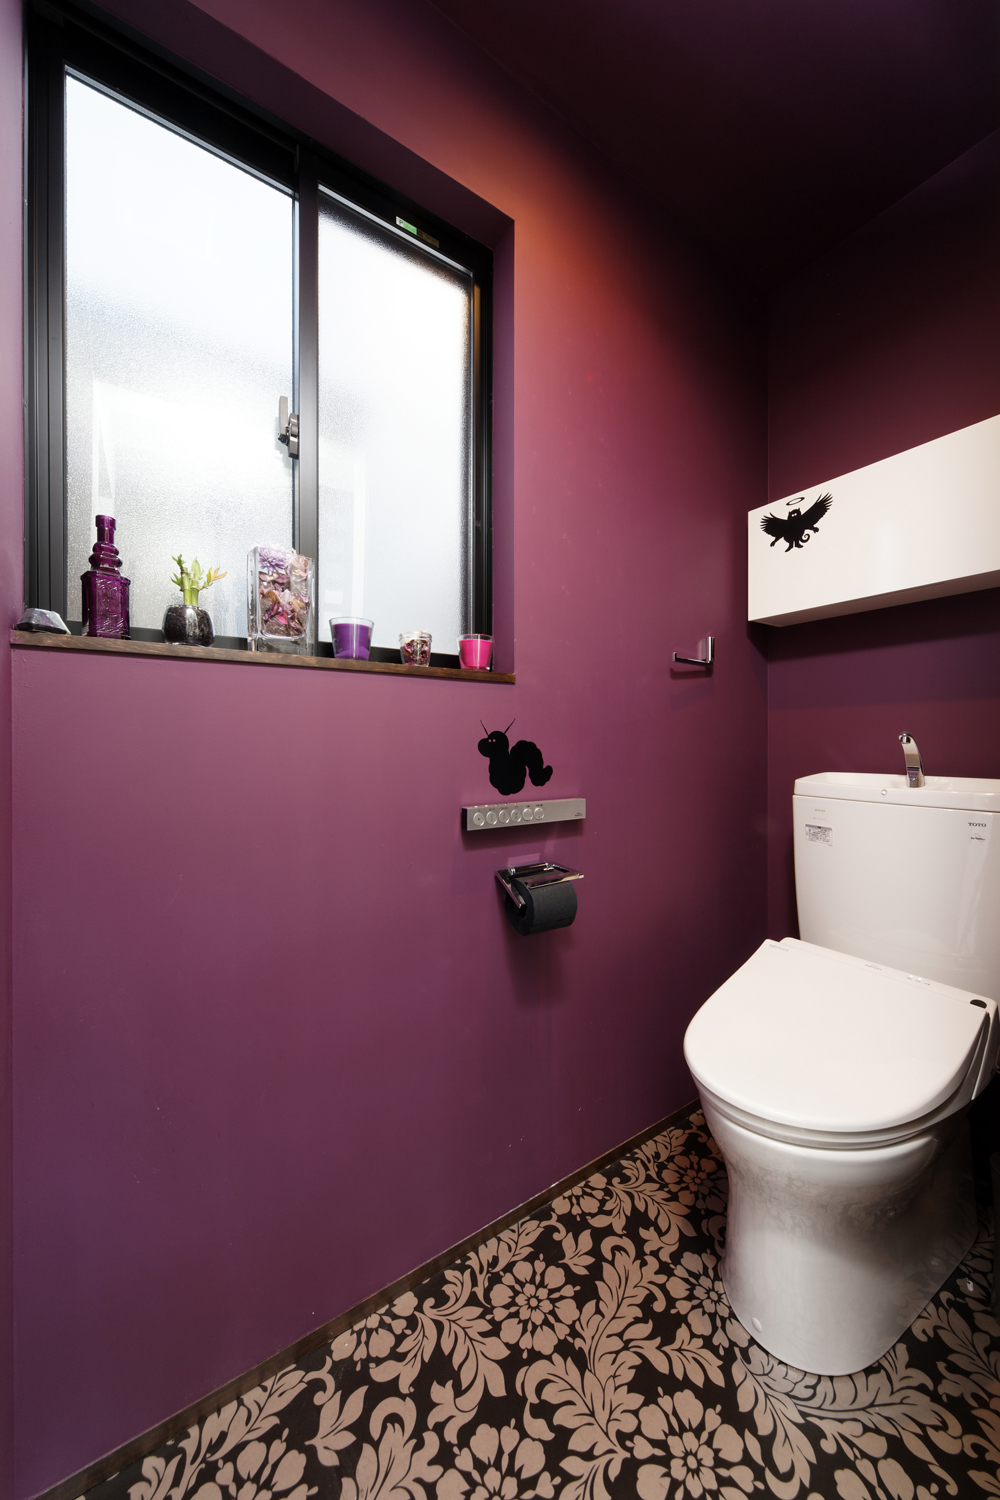 マゼンダカラーの壁と花柄の床が、ノスタルジックなトイレ